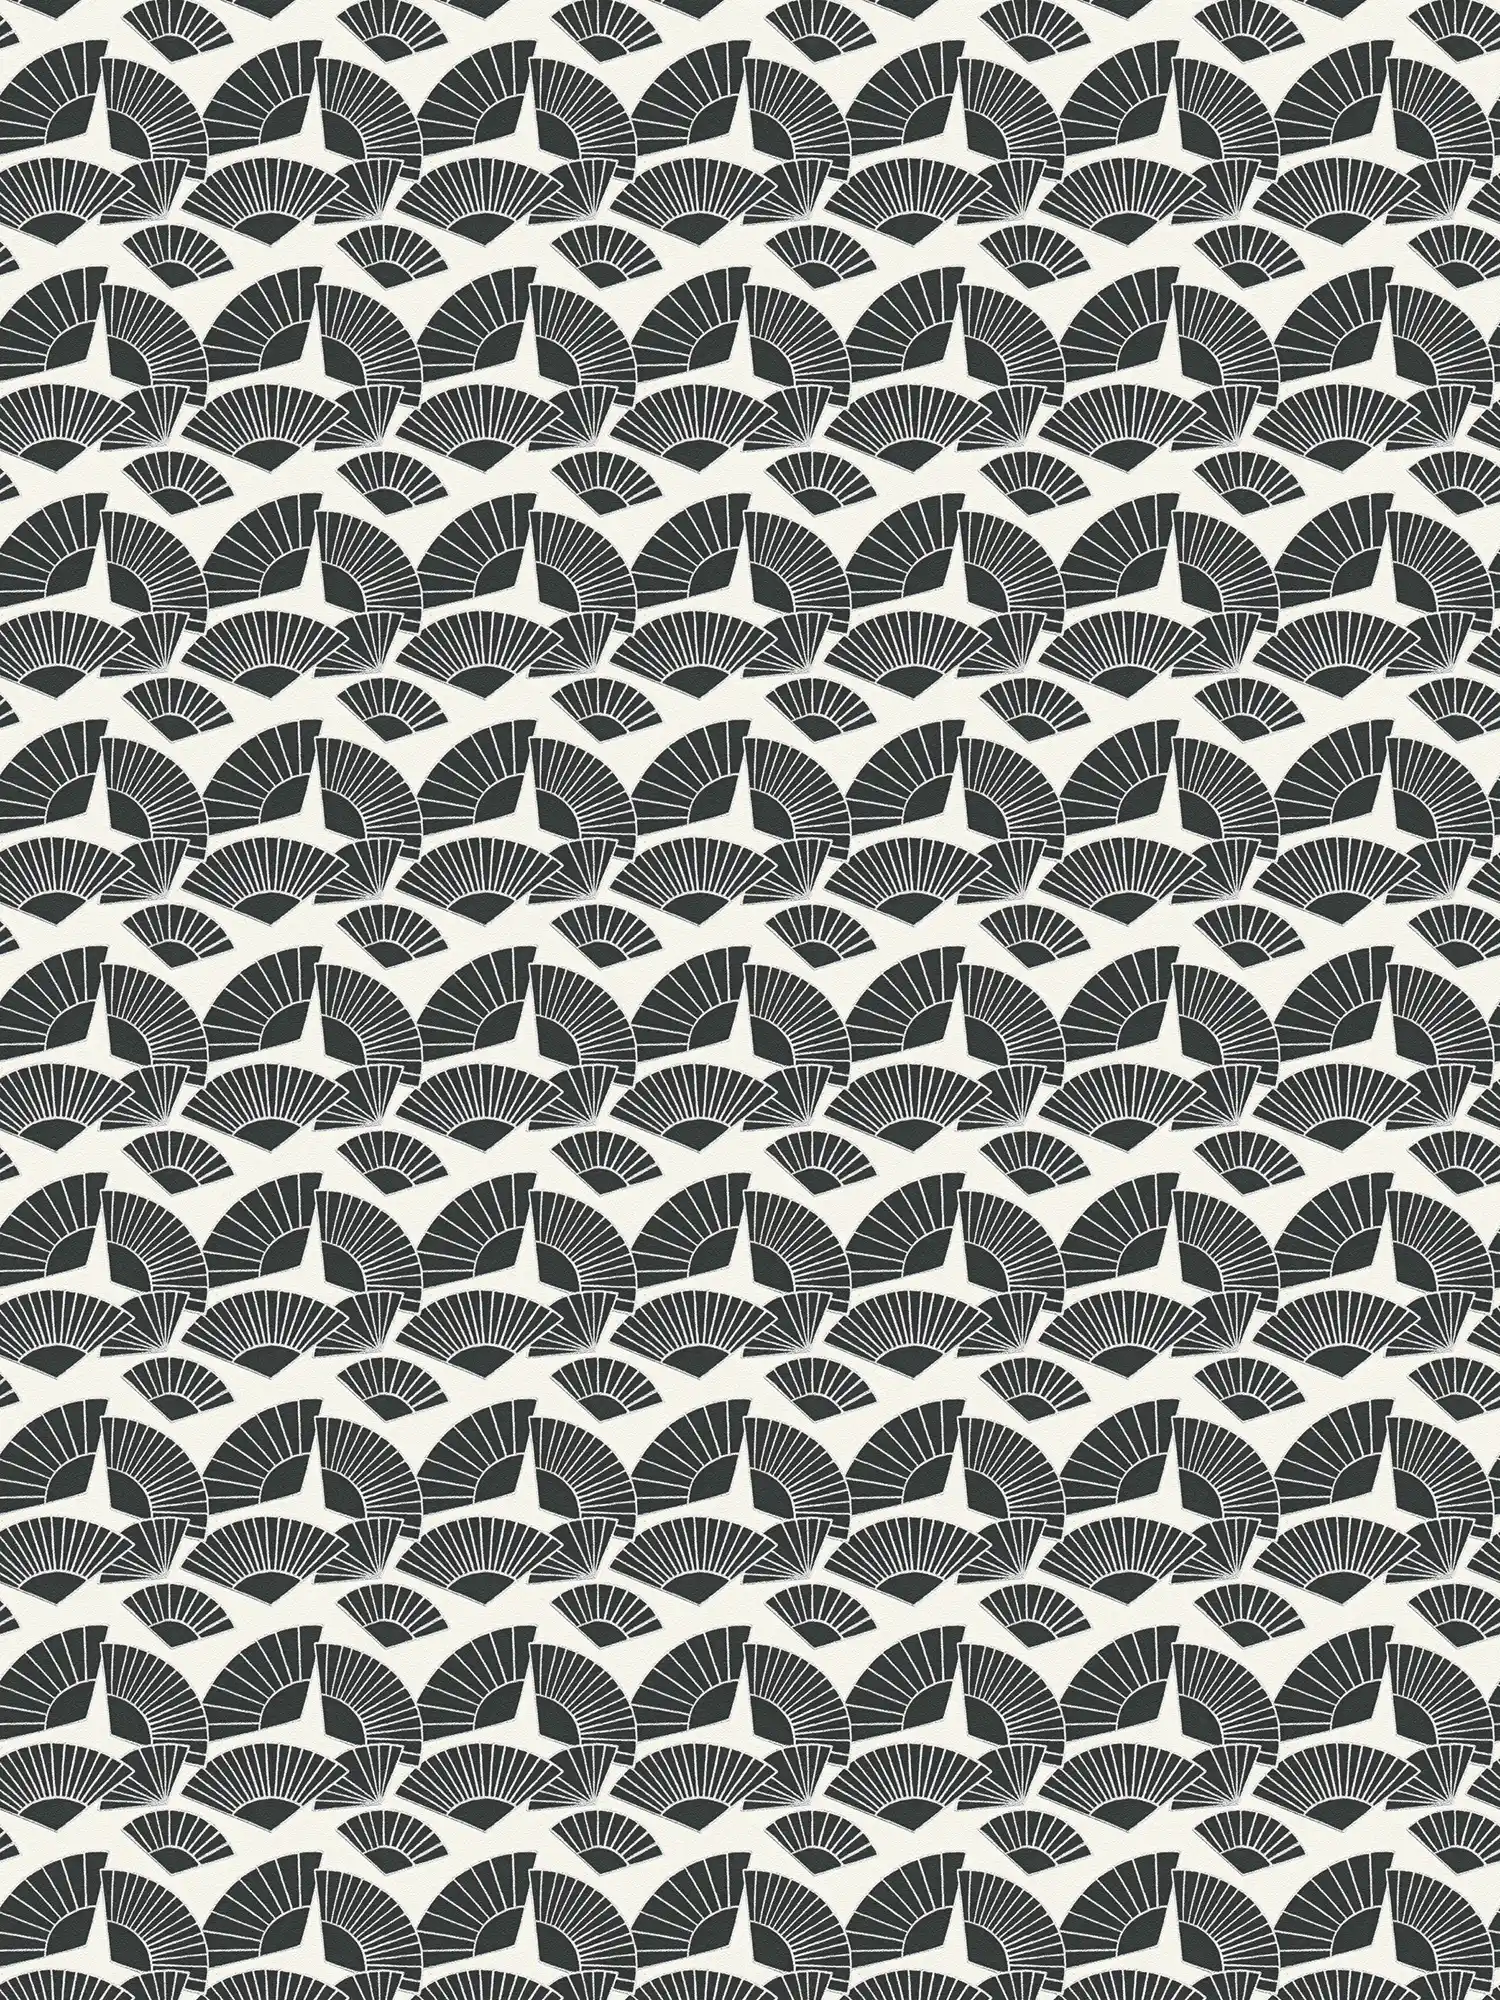 Tapete Karl LAGERFELD Fächer Muster – Metallic, Schwarz, Weiß
